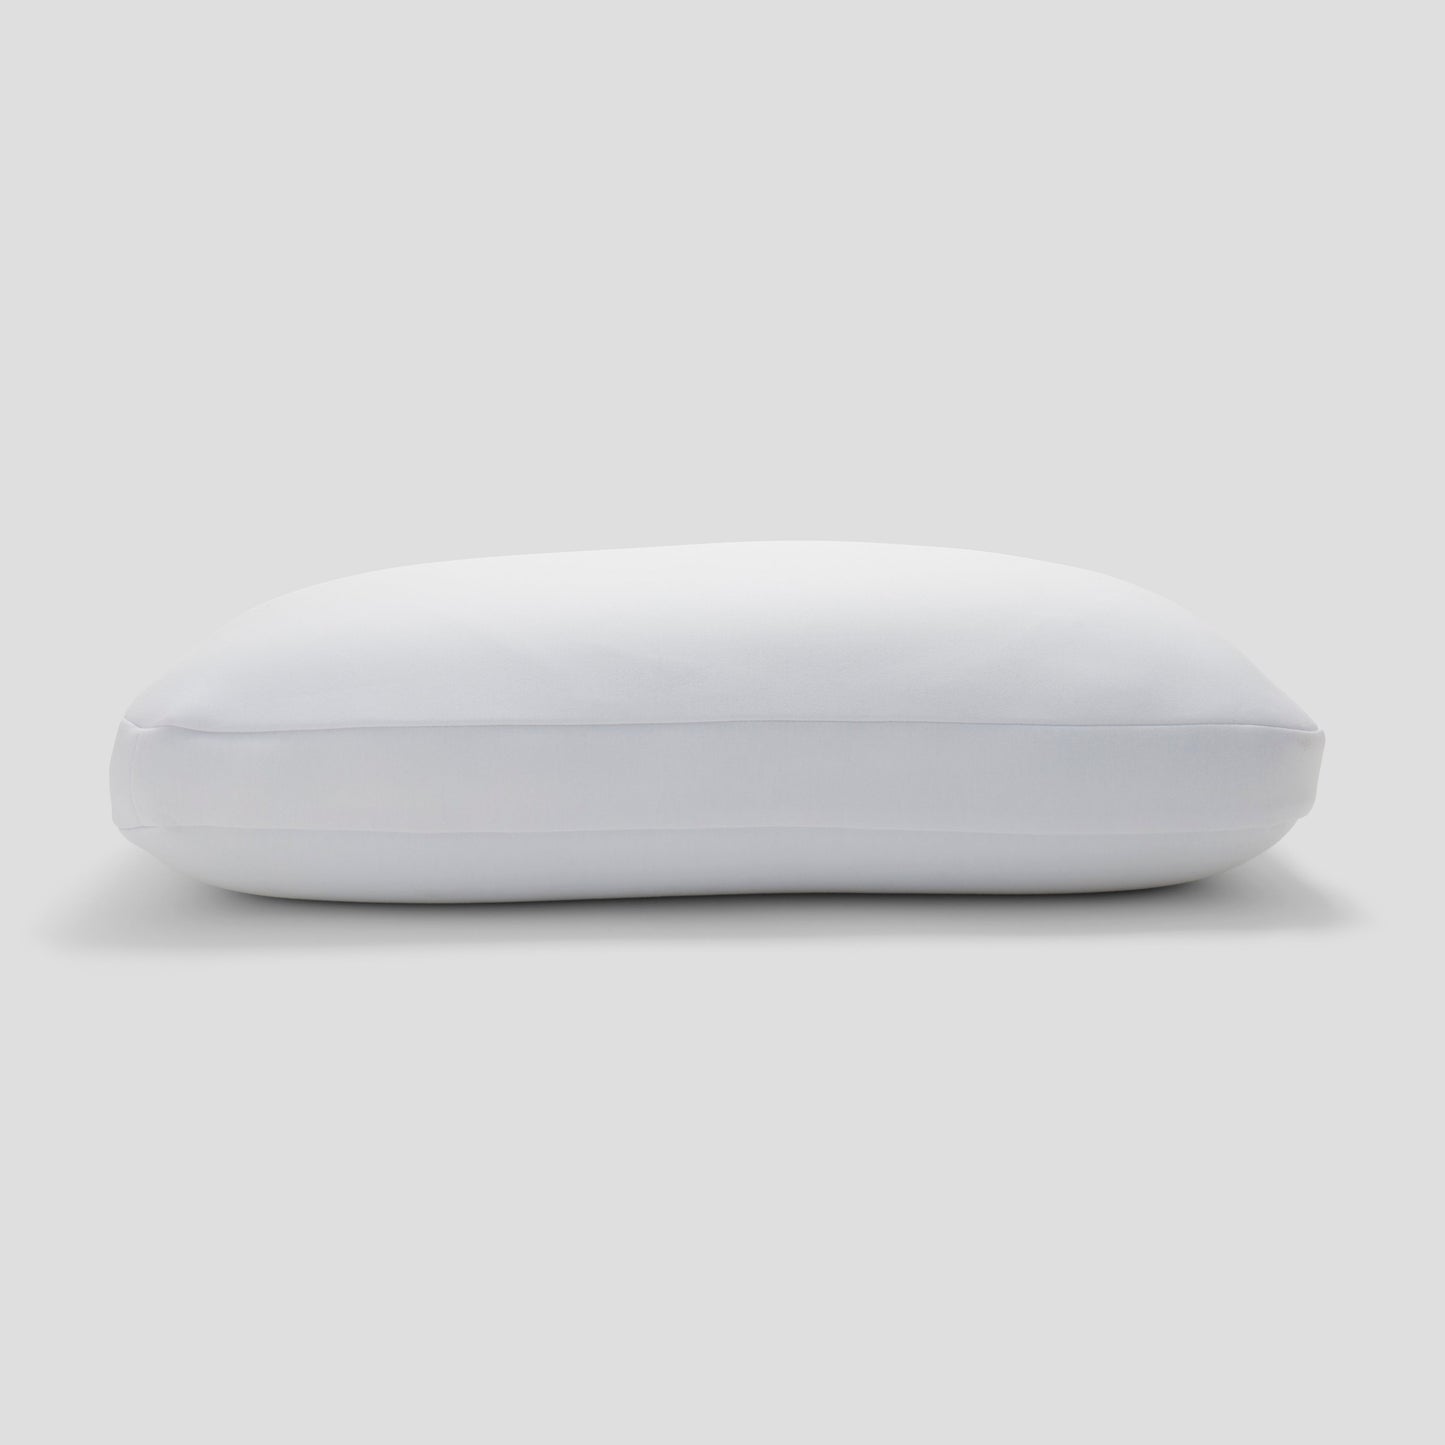 Casper Hybrid Pillow Side View